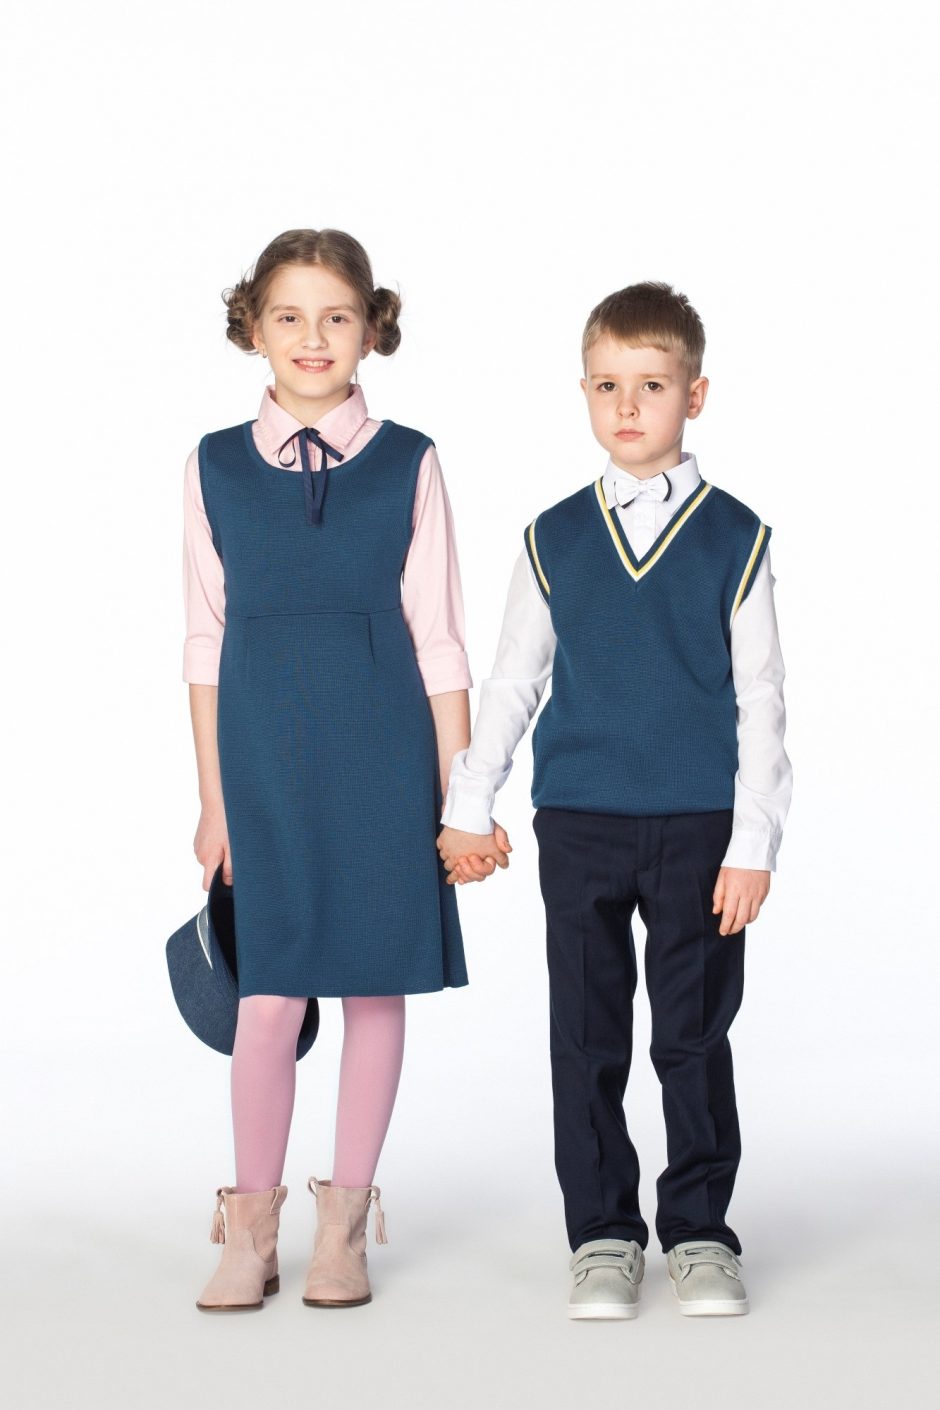 Mokyklinė uniforma: moksleivių draugė ar priešė?